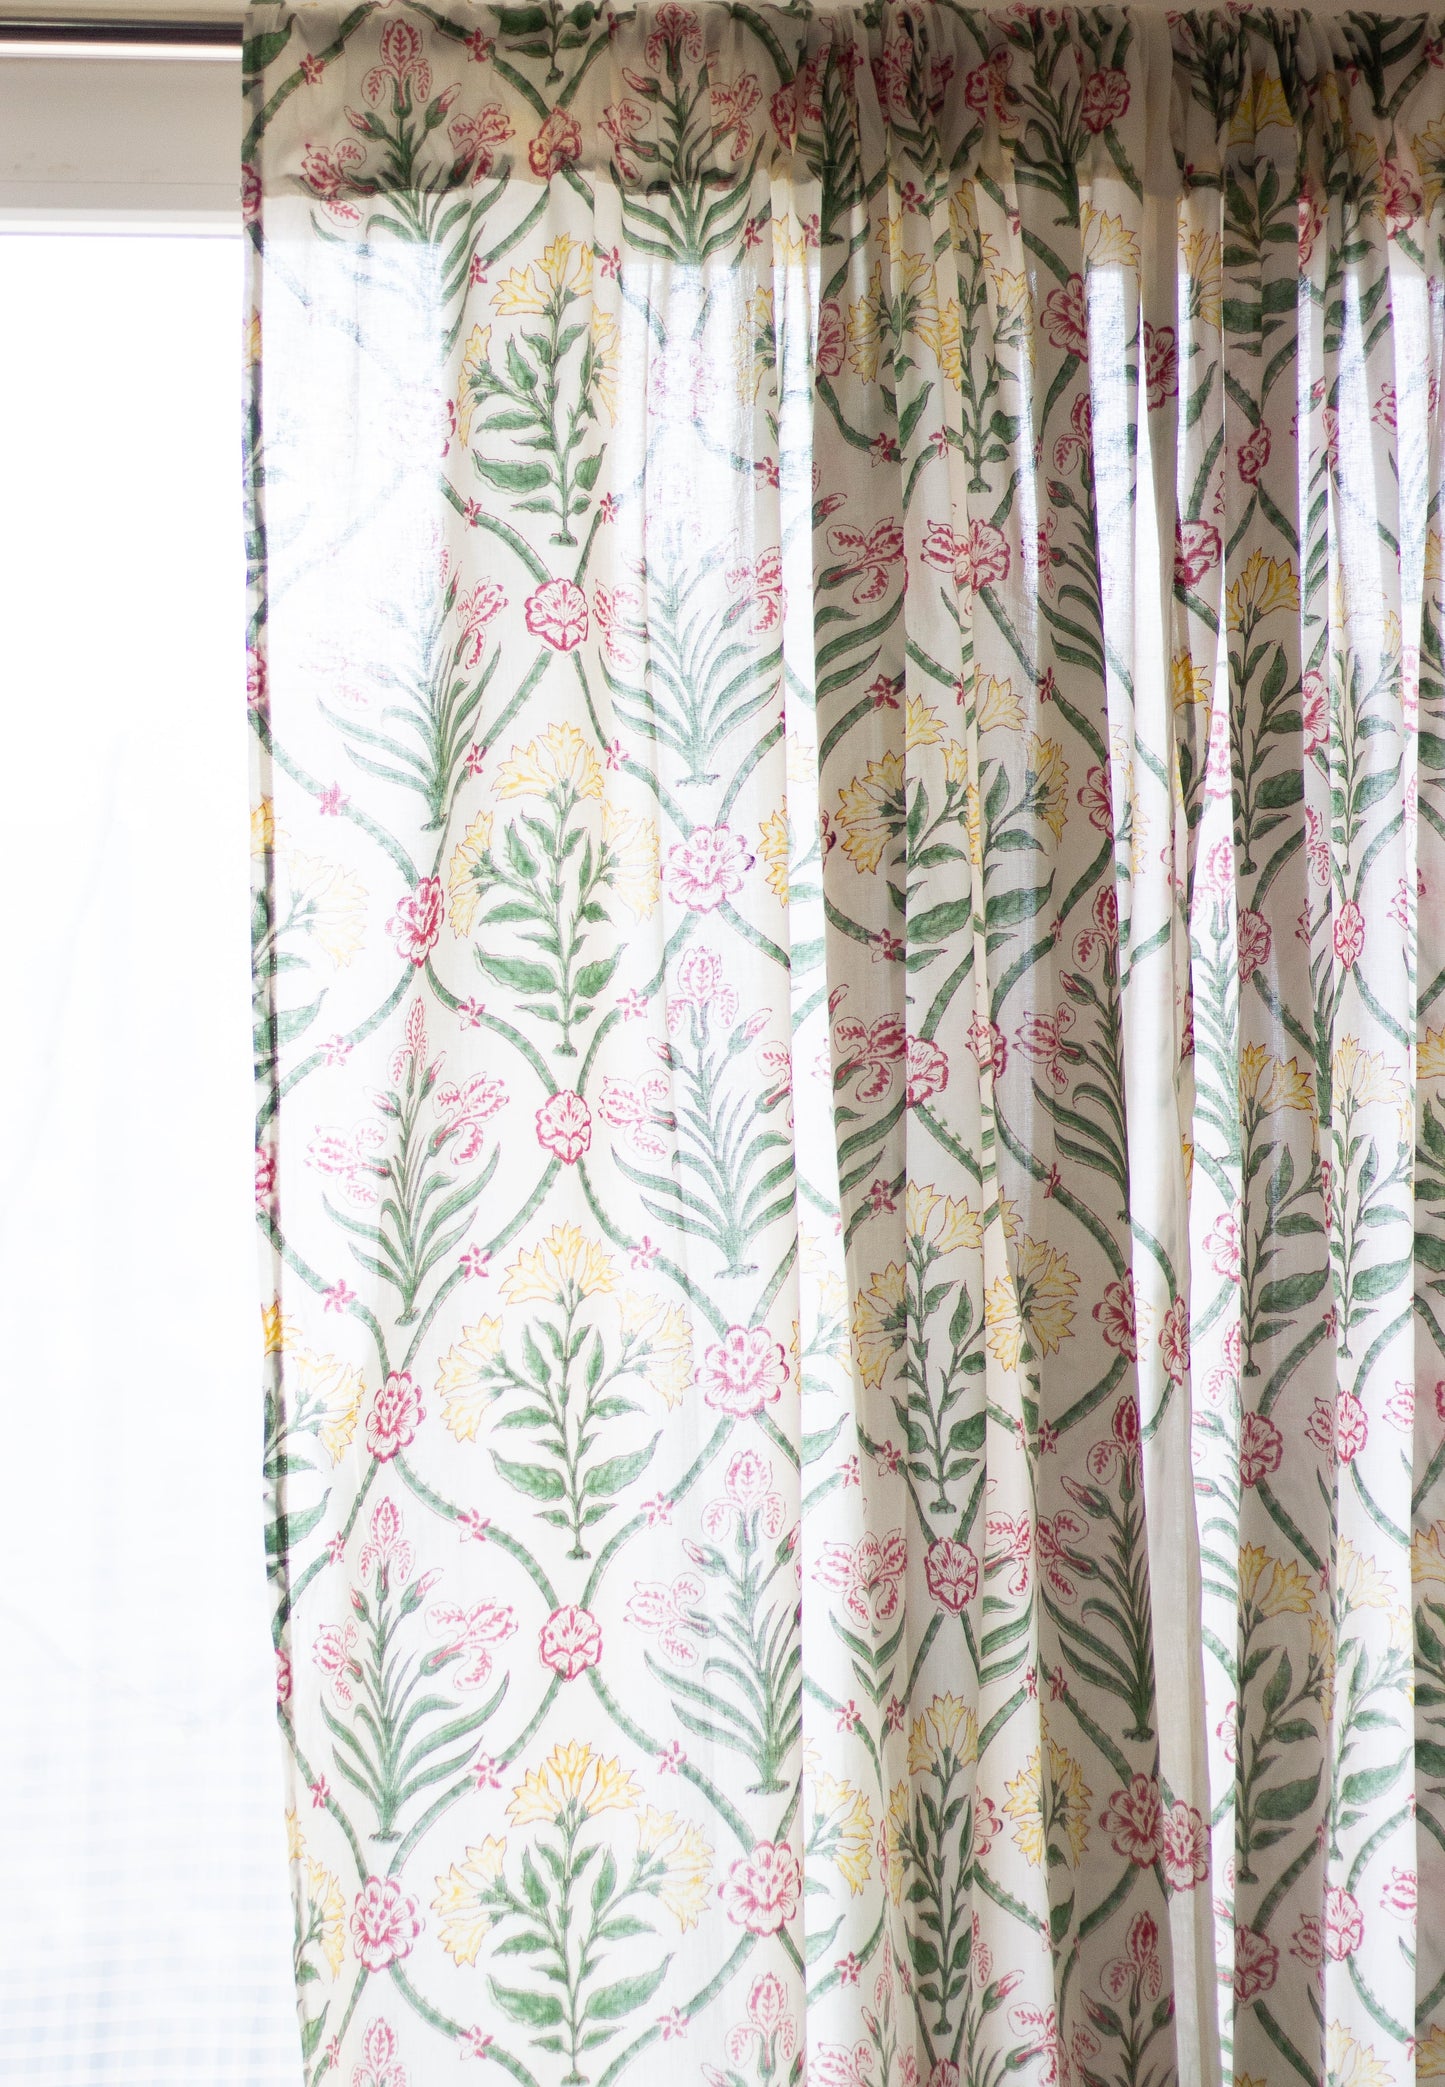 Sari inspired curtain - sheer curtains - Sold individually